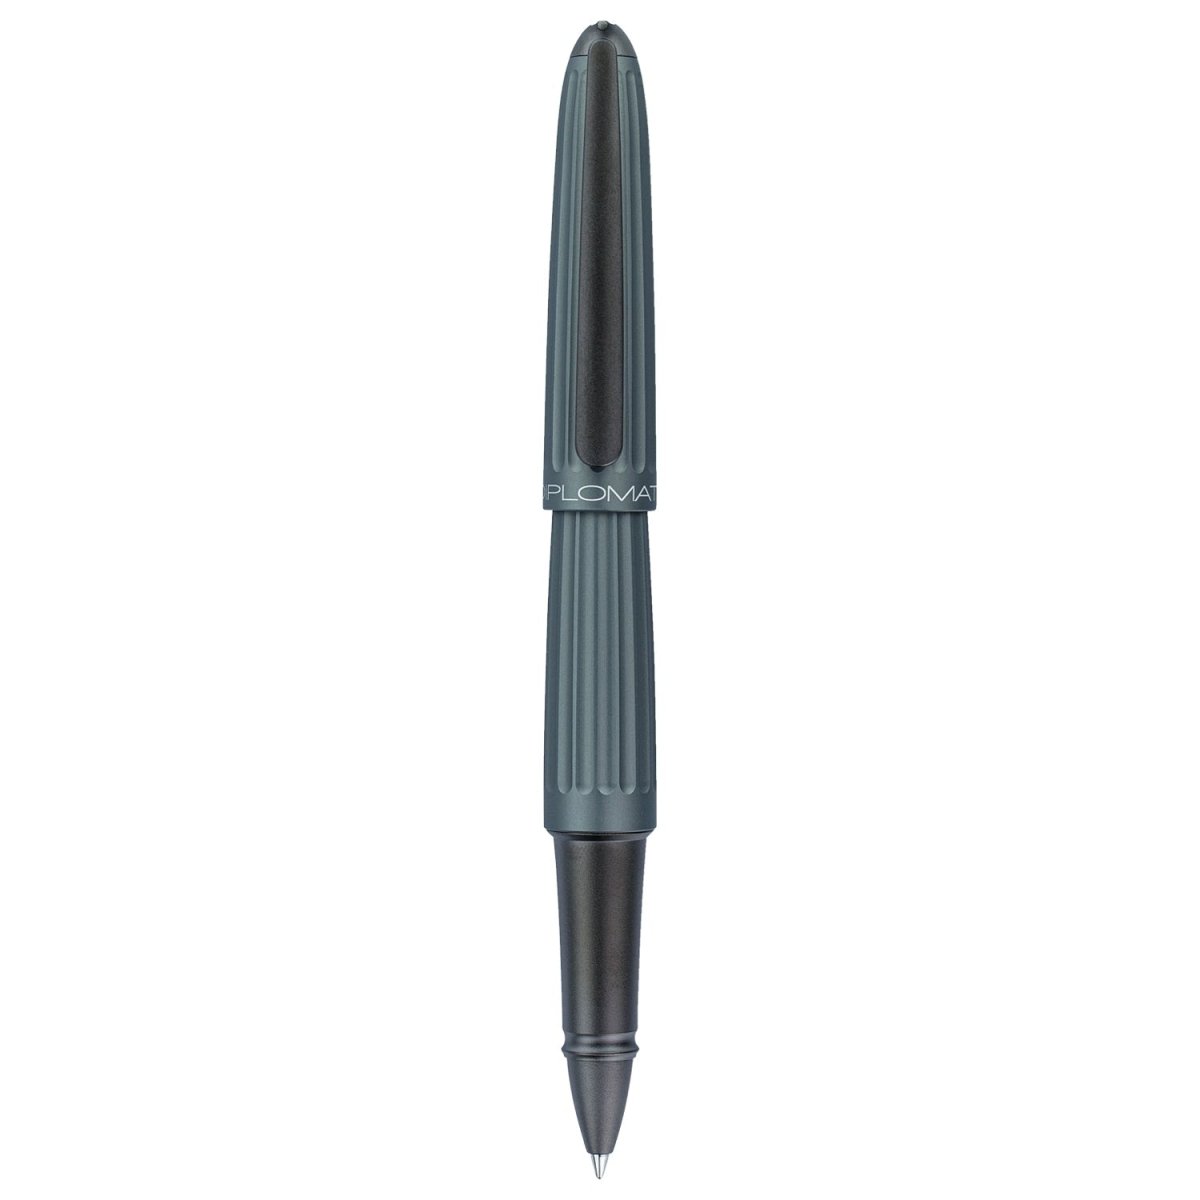 Diplomat Aero Roller Ball Pen - SCOOBOO - DP_D40314030_AER_GRY_RB - Roller Ball Pen